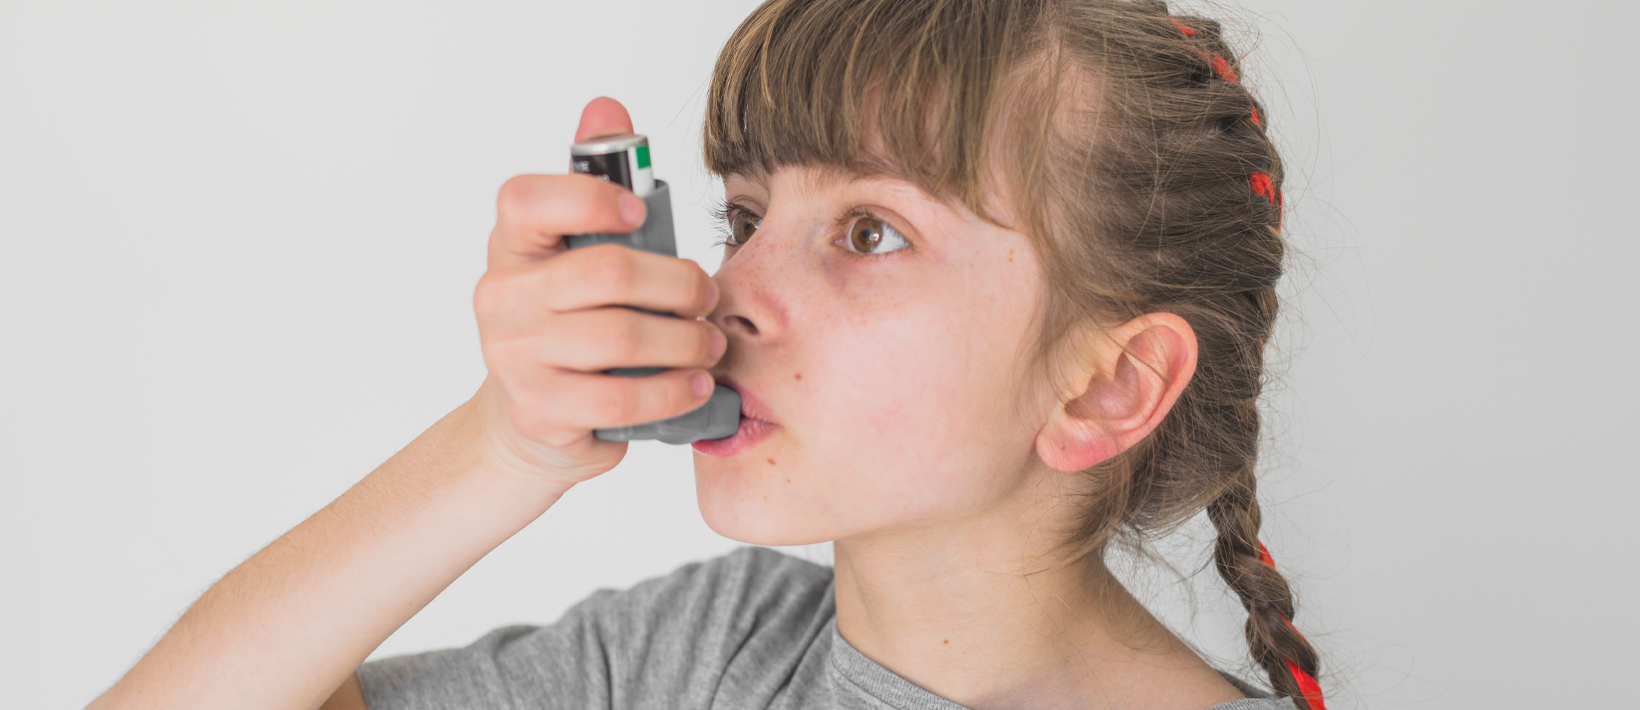 Mepolizumabe para tratamento de asma grave em crianças e adolescentes